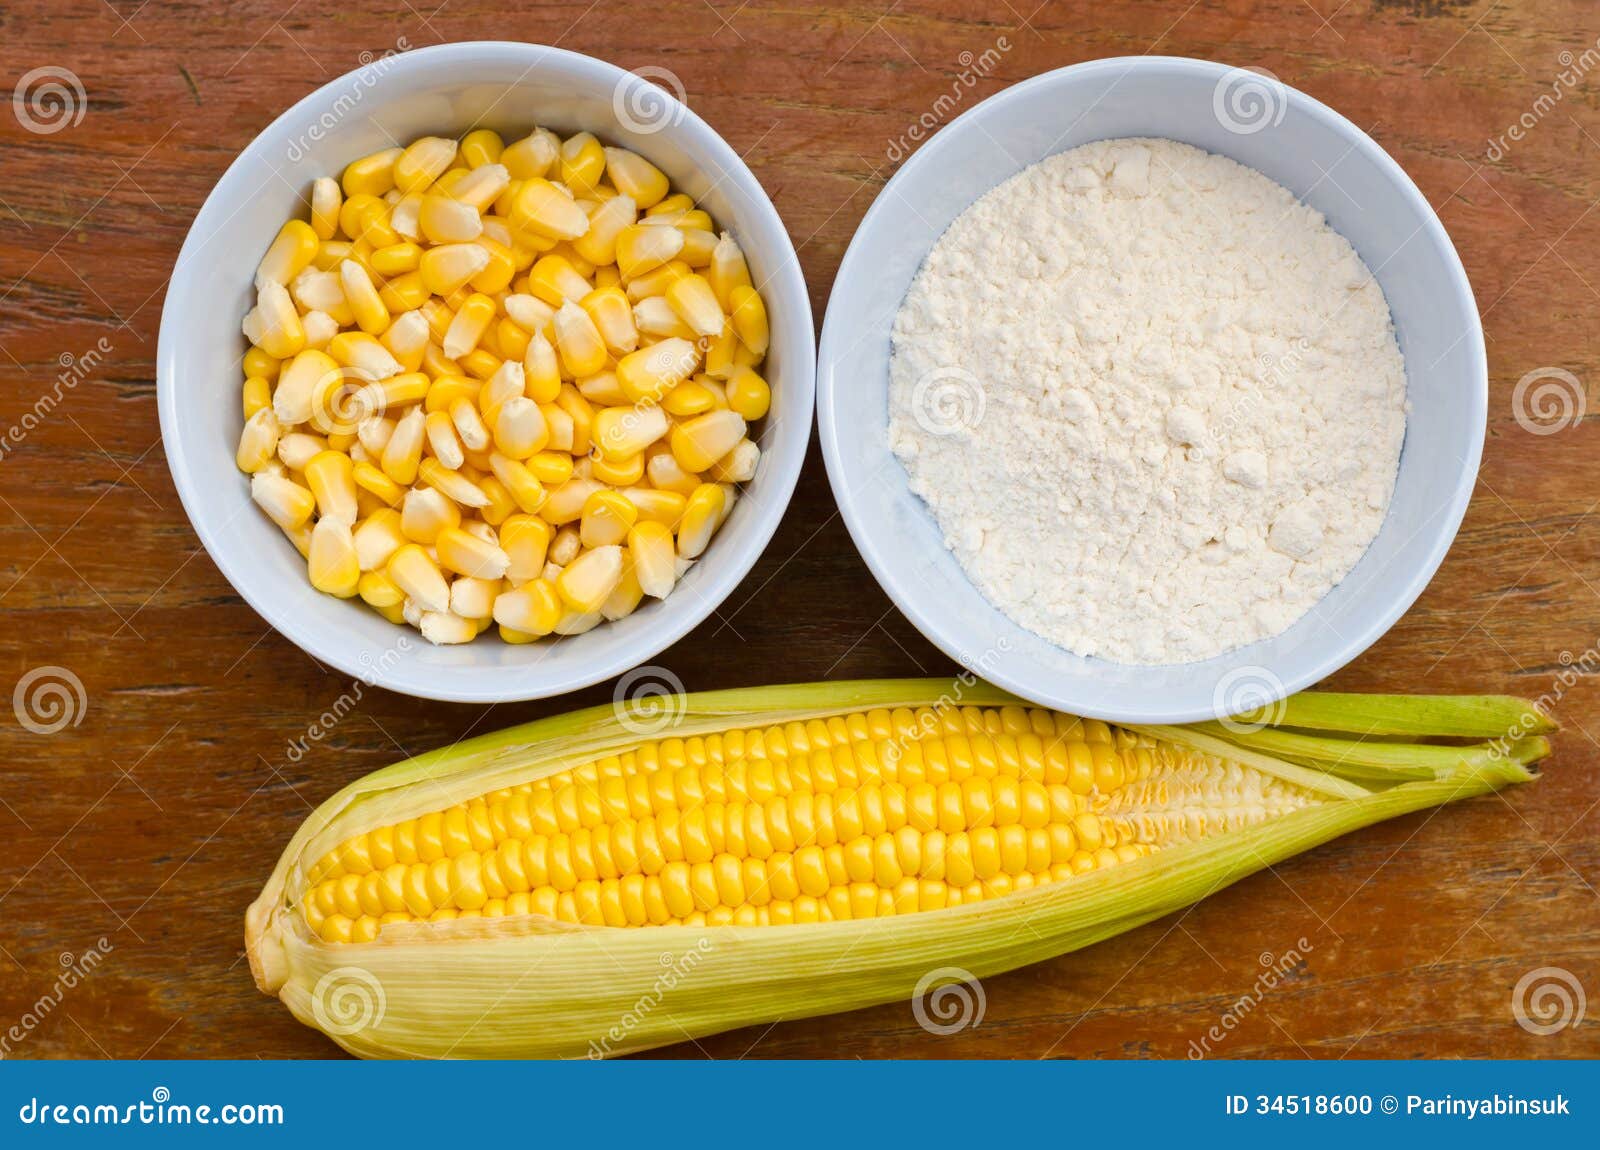 甜玉米和糯玉米的区别 - 知乎